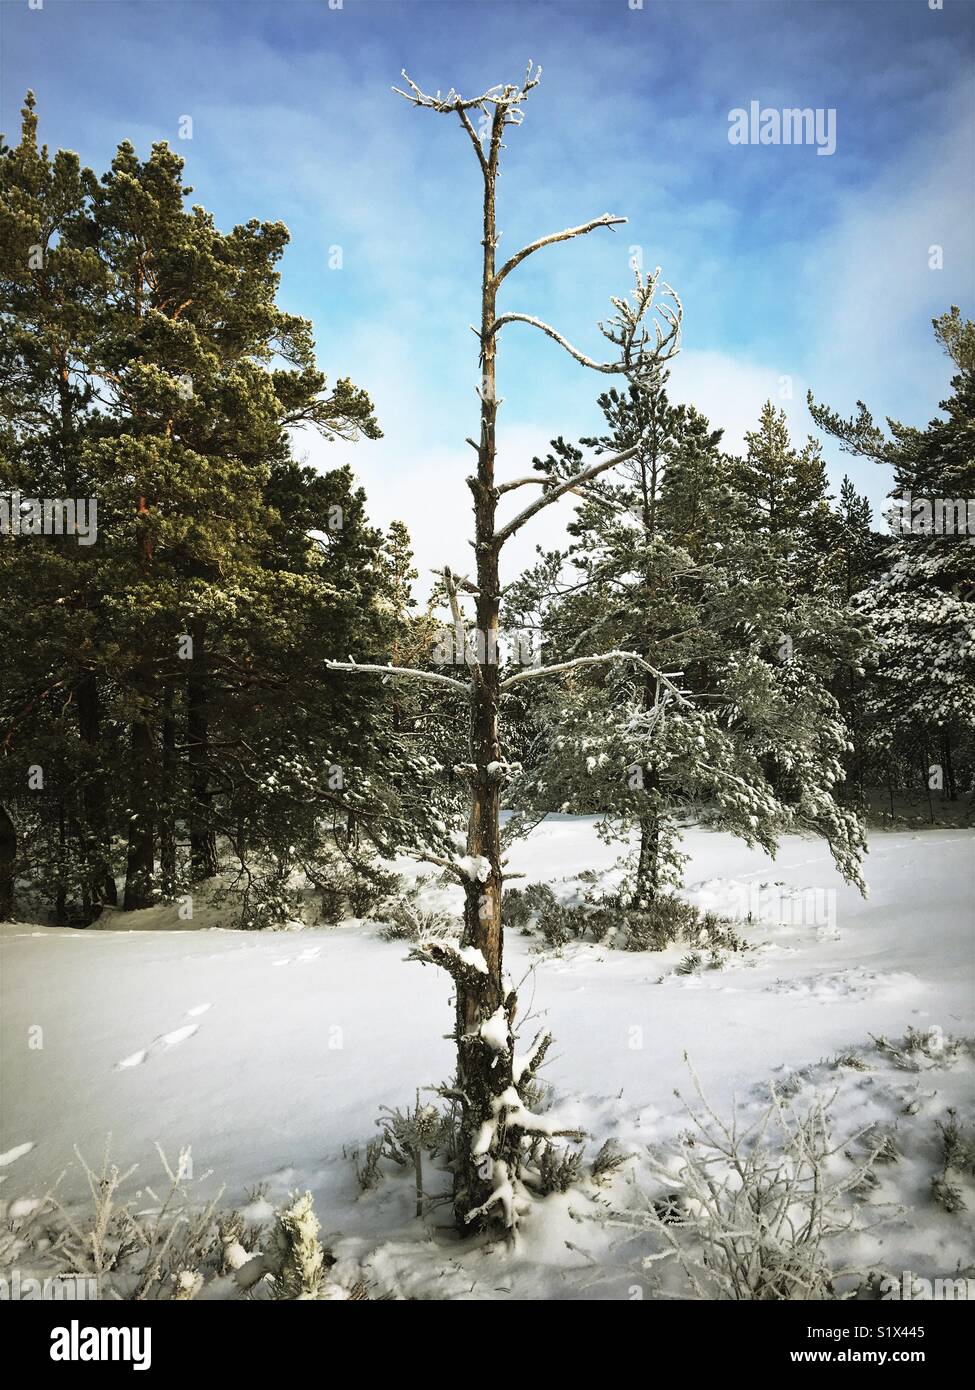 Lone Pine Tree morte dans la forêt de conifères suédois en hiver neige Banque D'Images